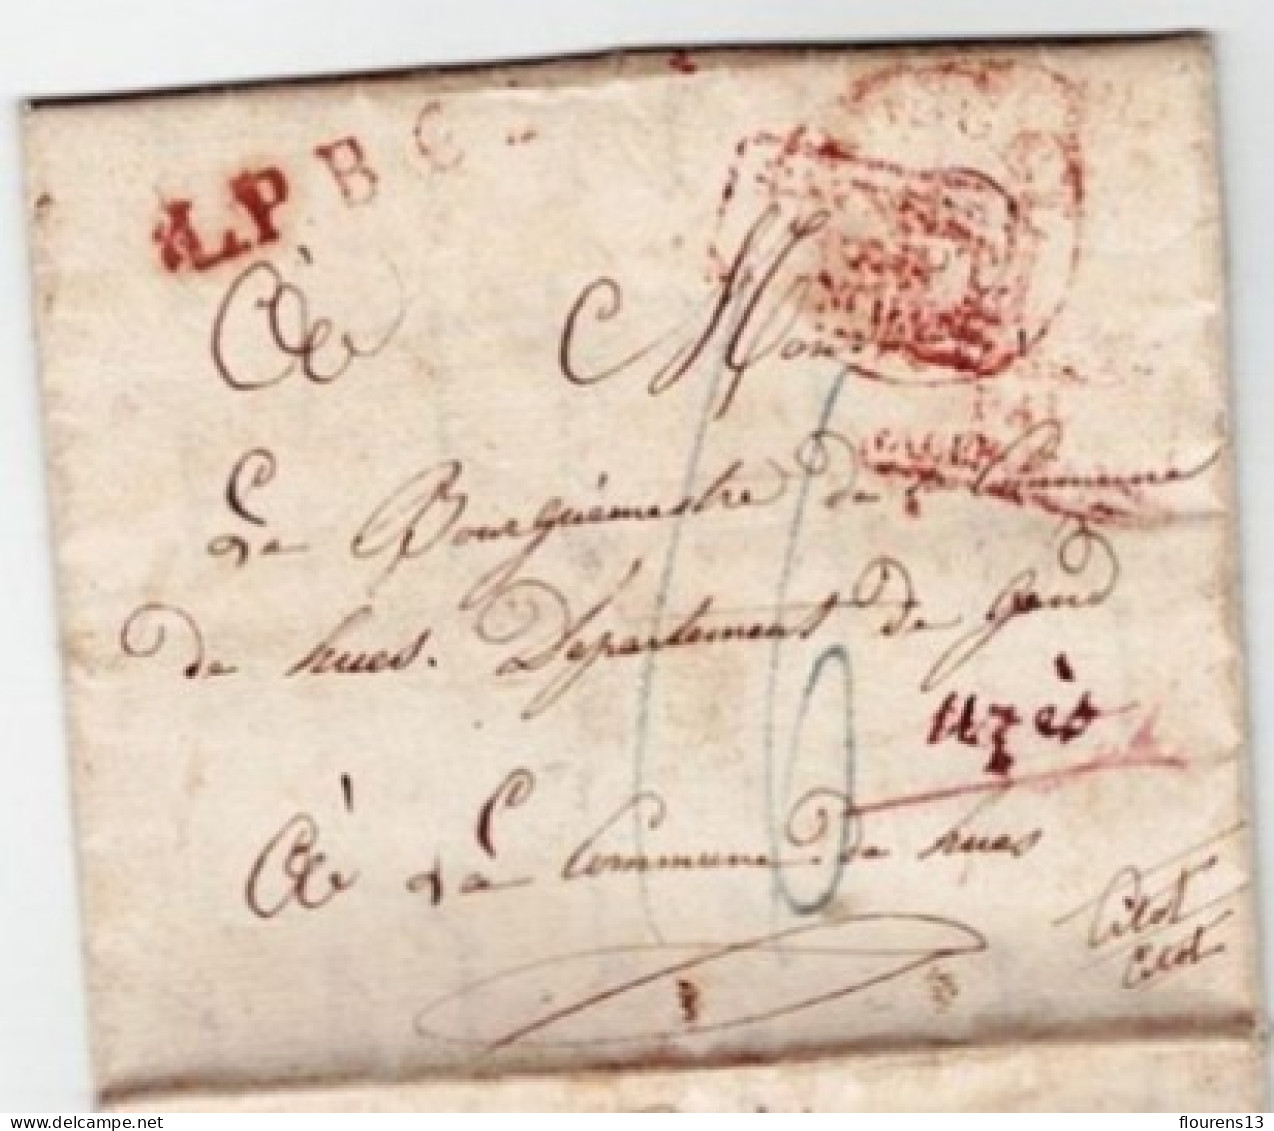 LETTRE DATE DE LA PRISON DE St BERNARD ADRESSEE AU BOURGUEMESTRE DE HUES EN BELGIQUE TAXE +CACHET DE CENSURE 1830 - 1815-1830 (Periodo Holandes)